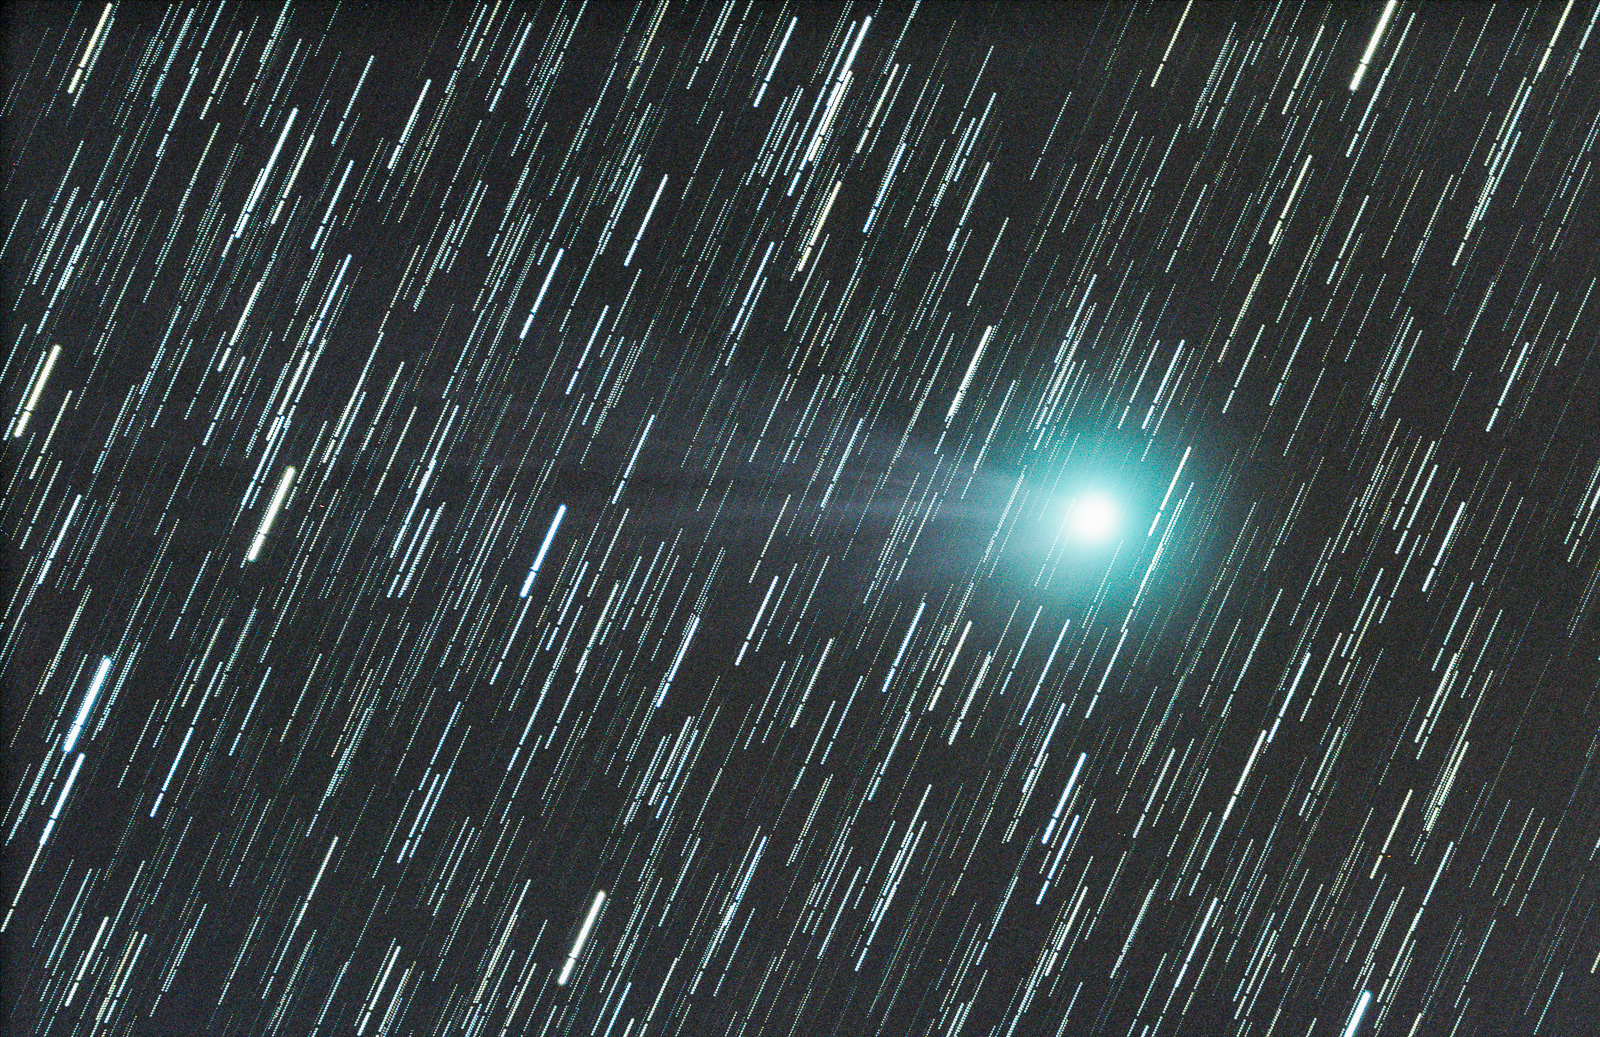 Comet C/2012 Q2 Lovejoy, 35x1min